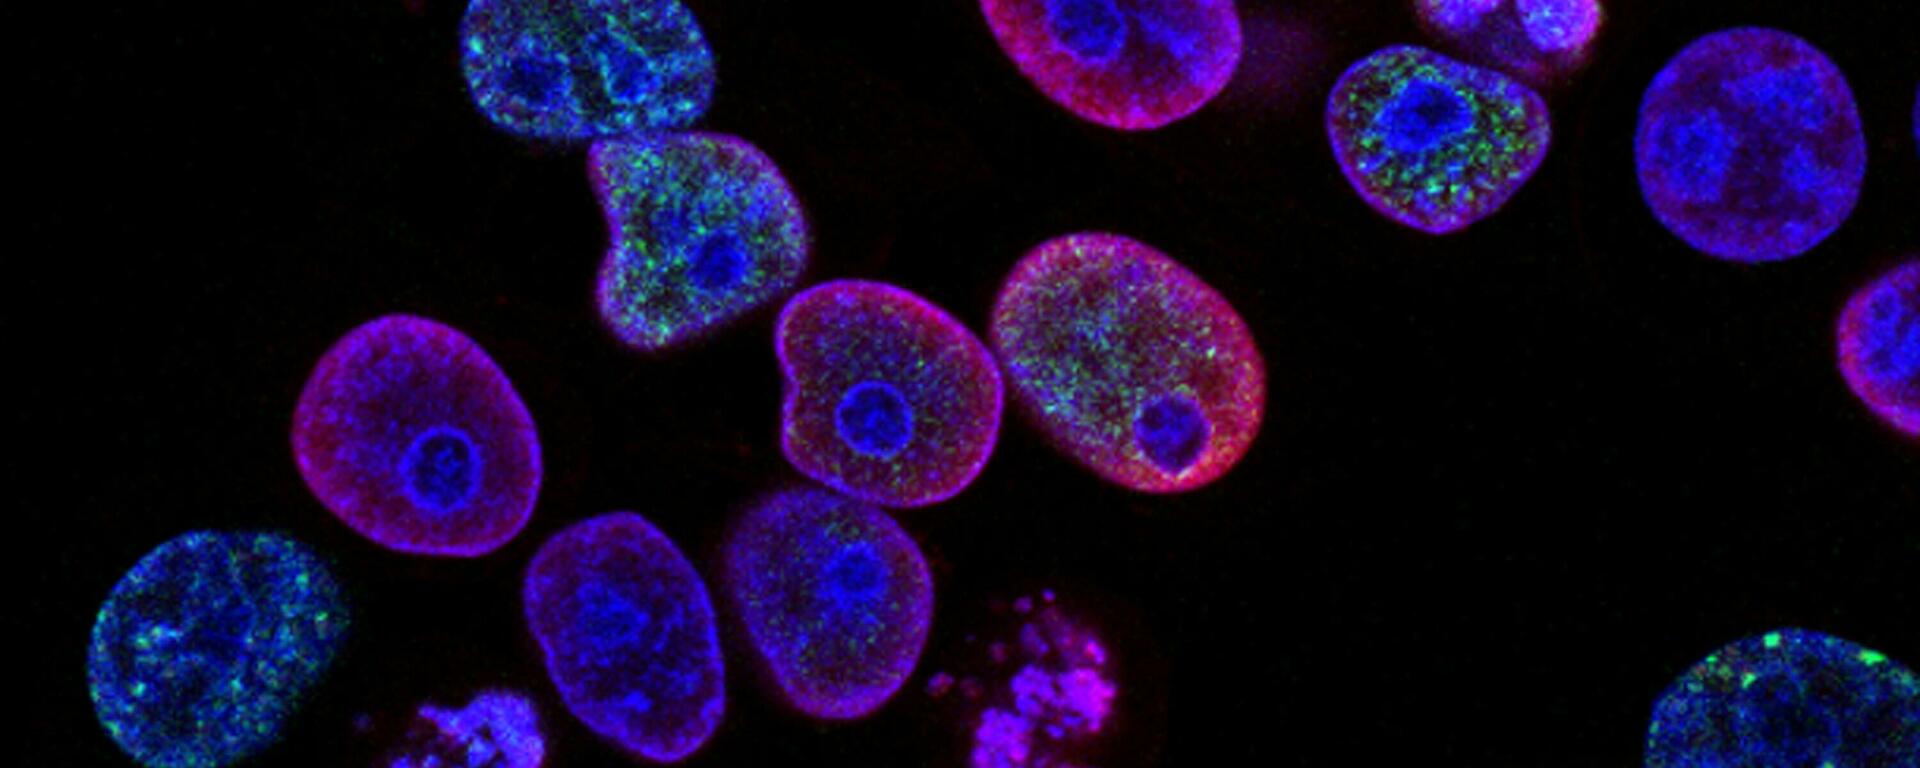 Cancer cells biology